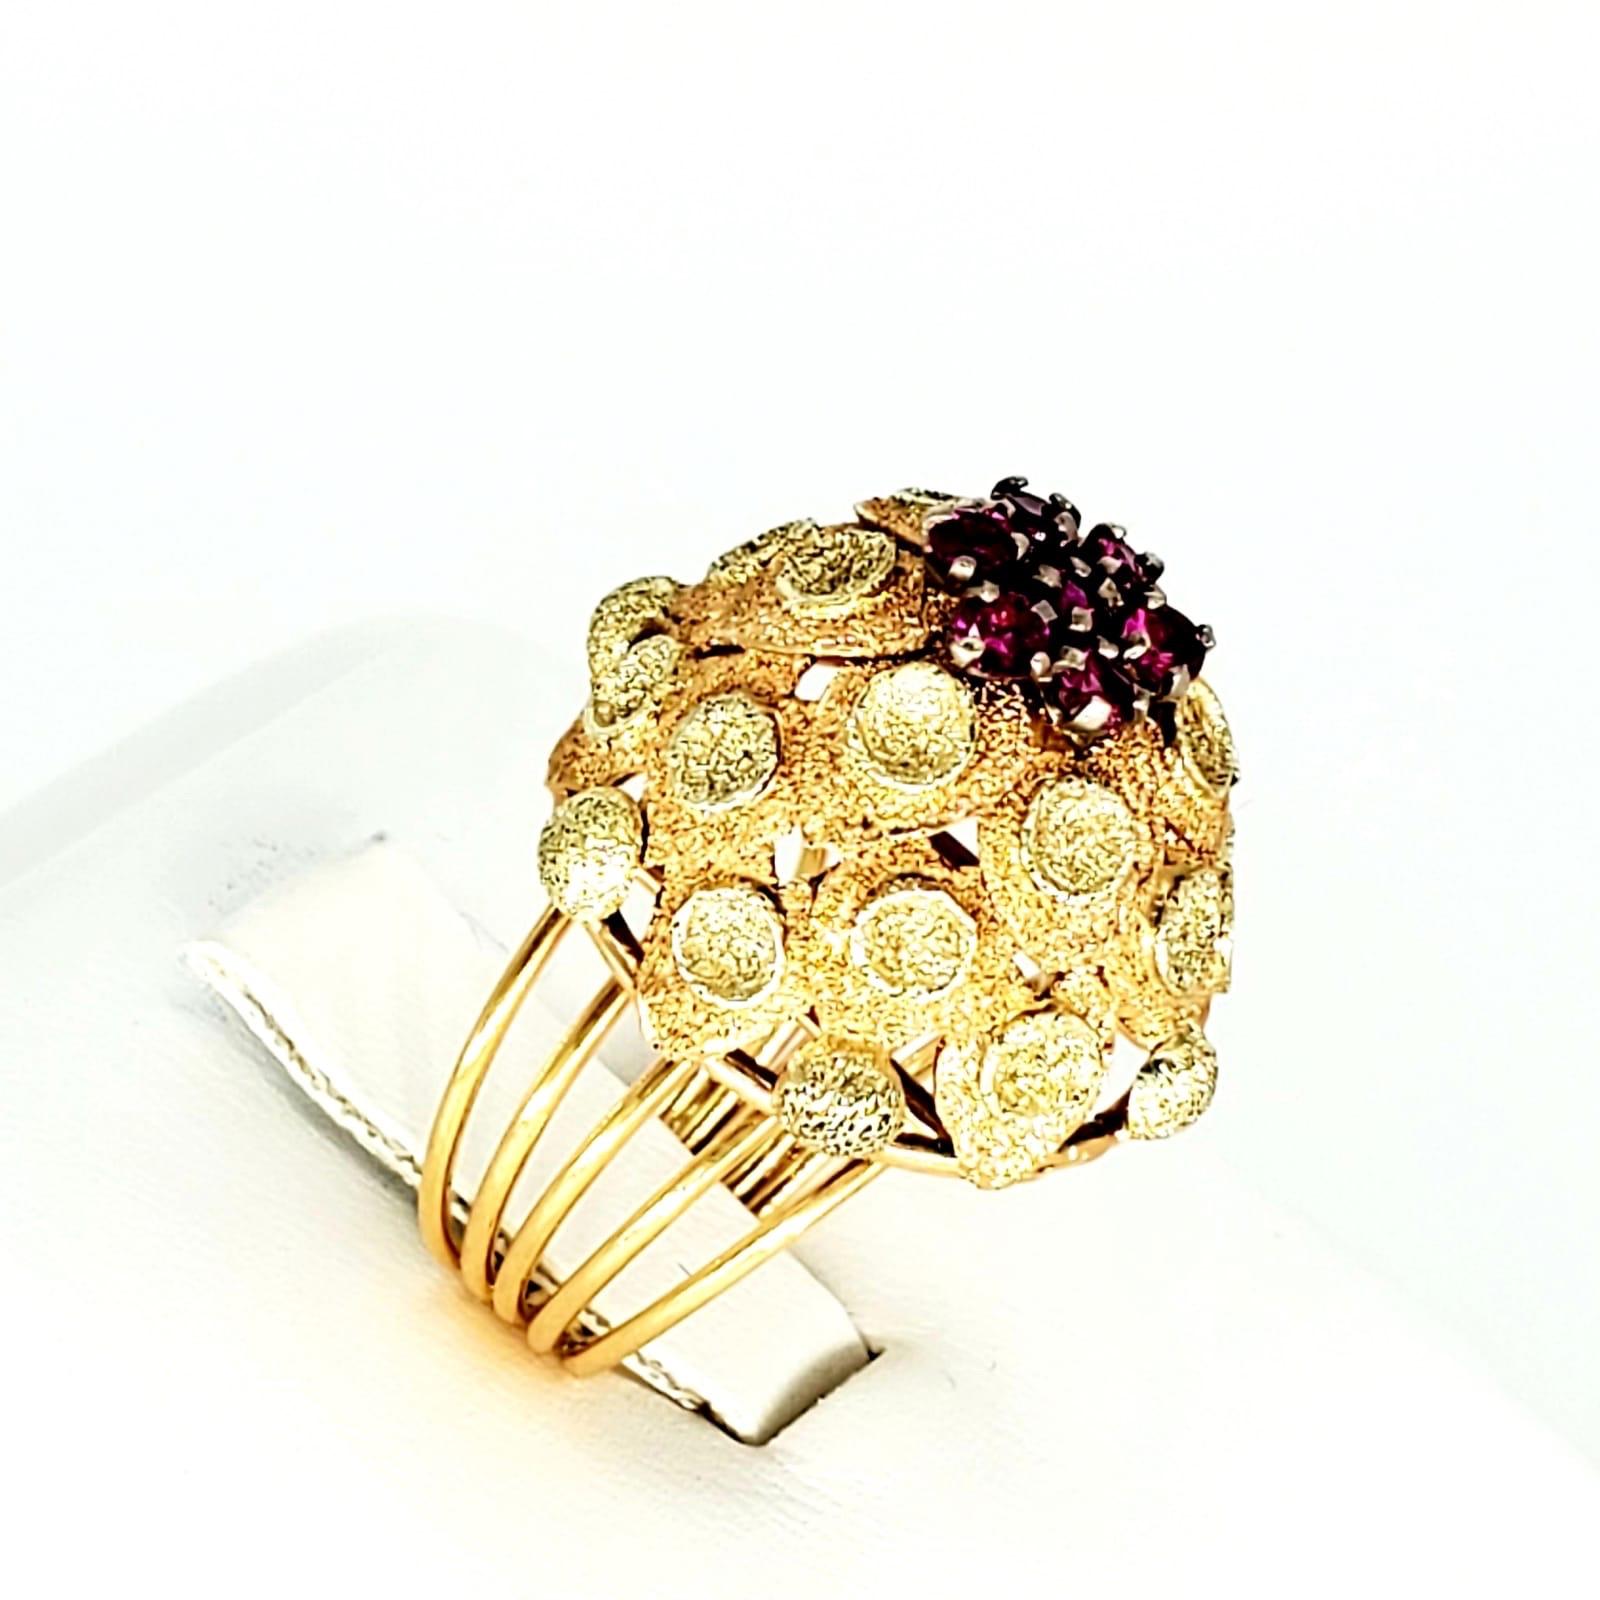 Retro 0,70 Karat Rubin Bombay Stil Cocktail 18k Gold Ring. Dieser Ring ist eine von einer Art Bombay-Stil Ring, der erstaunlich entworfen und in Handarbeit im Stil eines Blattes / Blume. Die Features ca. 0,70 Karat Ruby's und ist aus 18k massivem